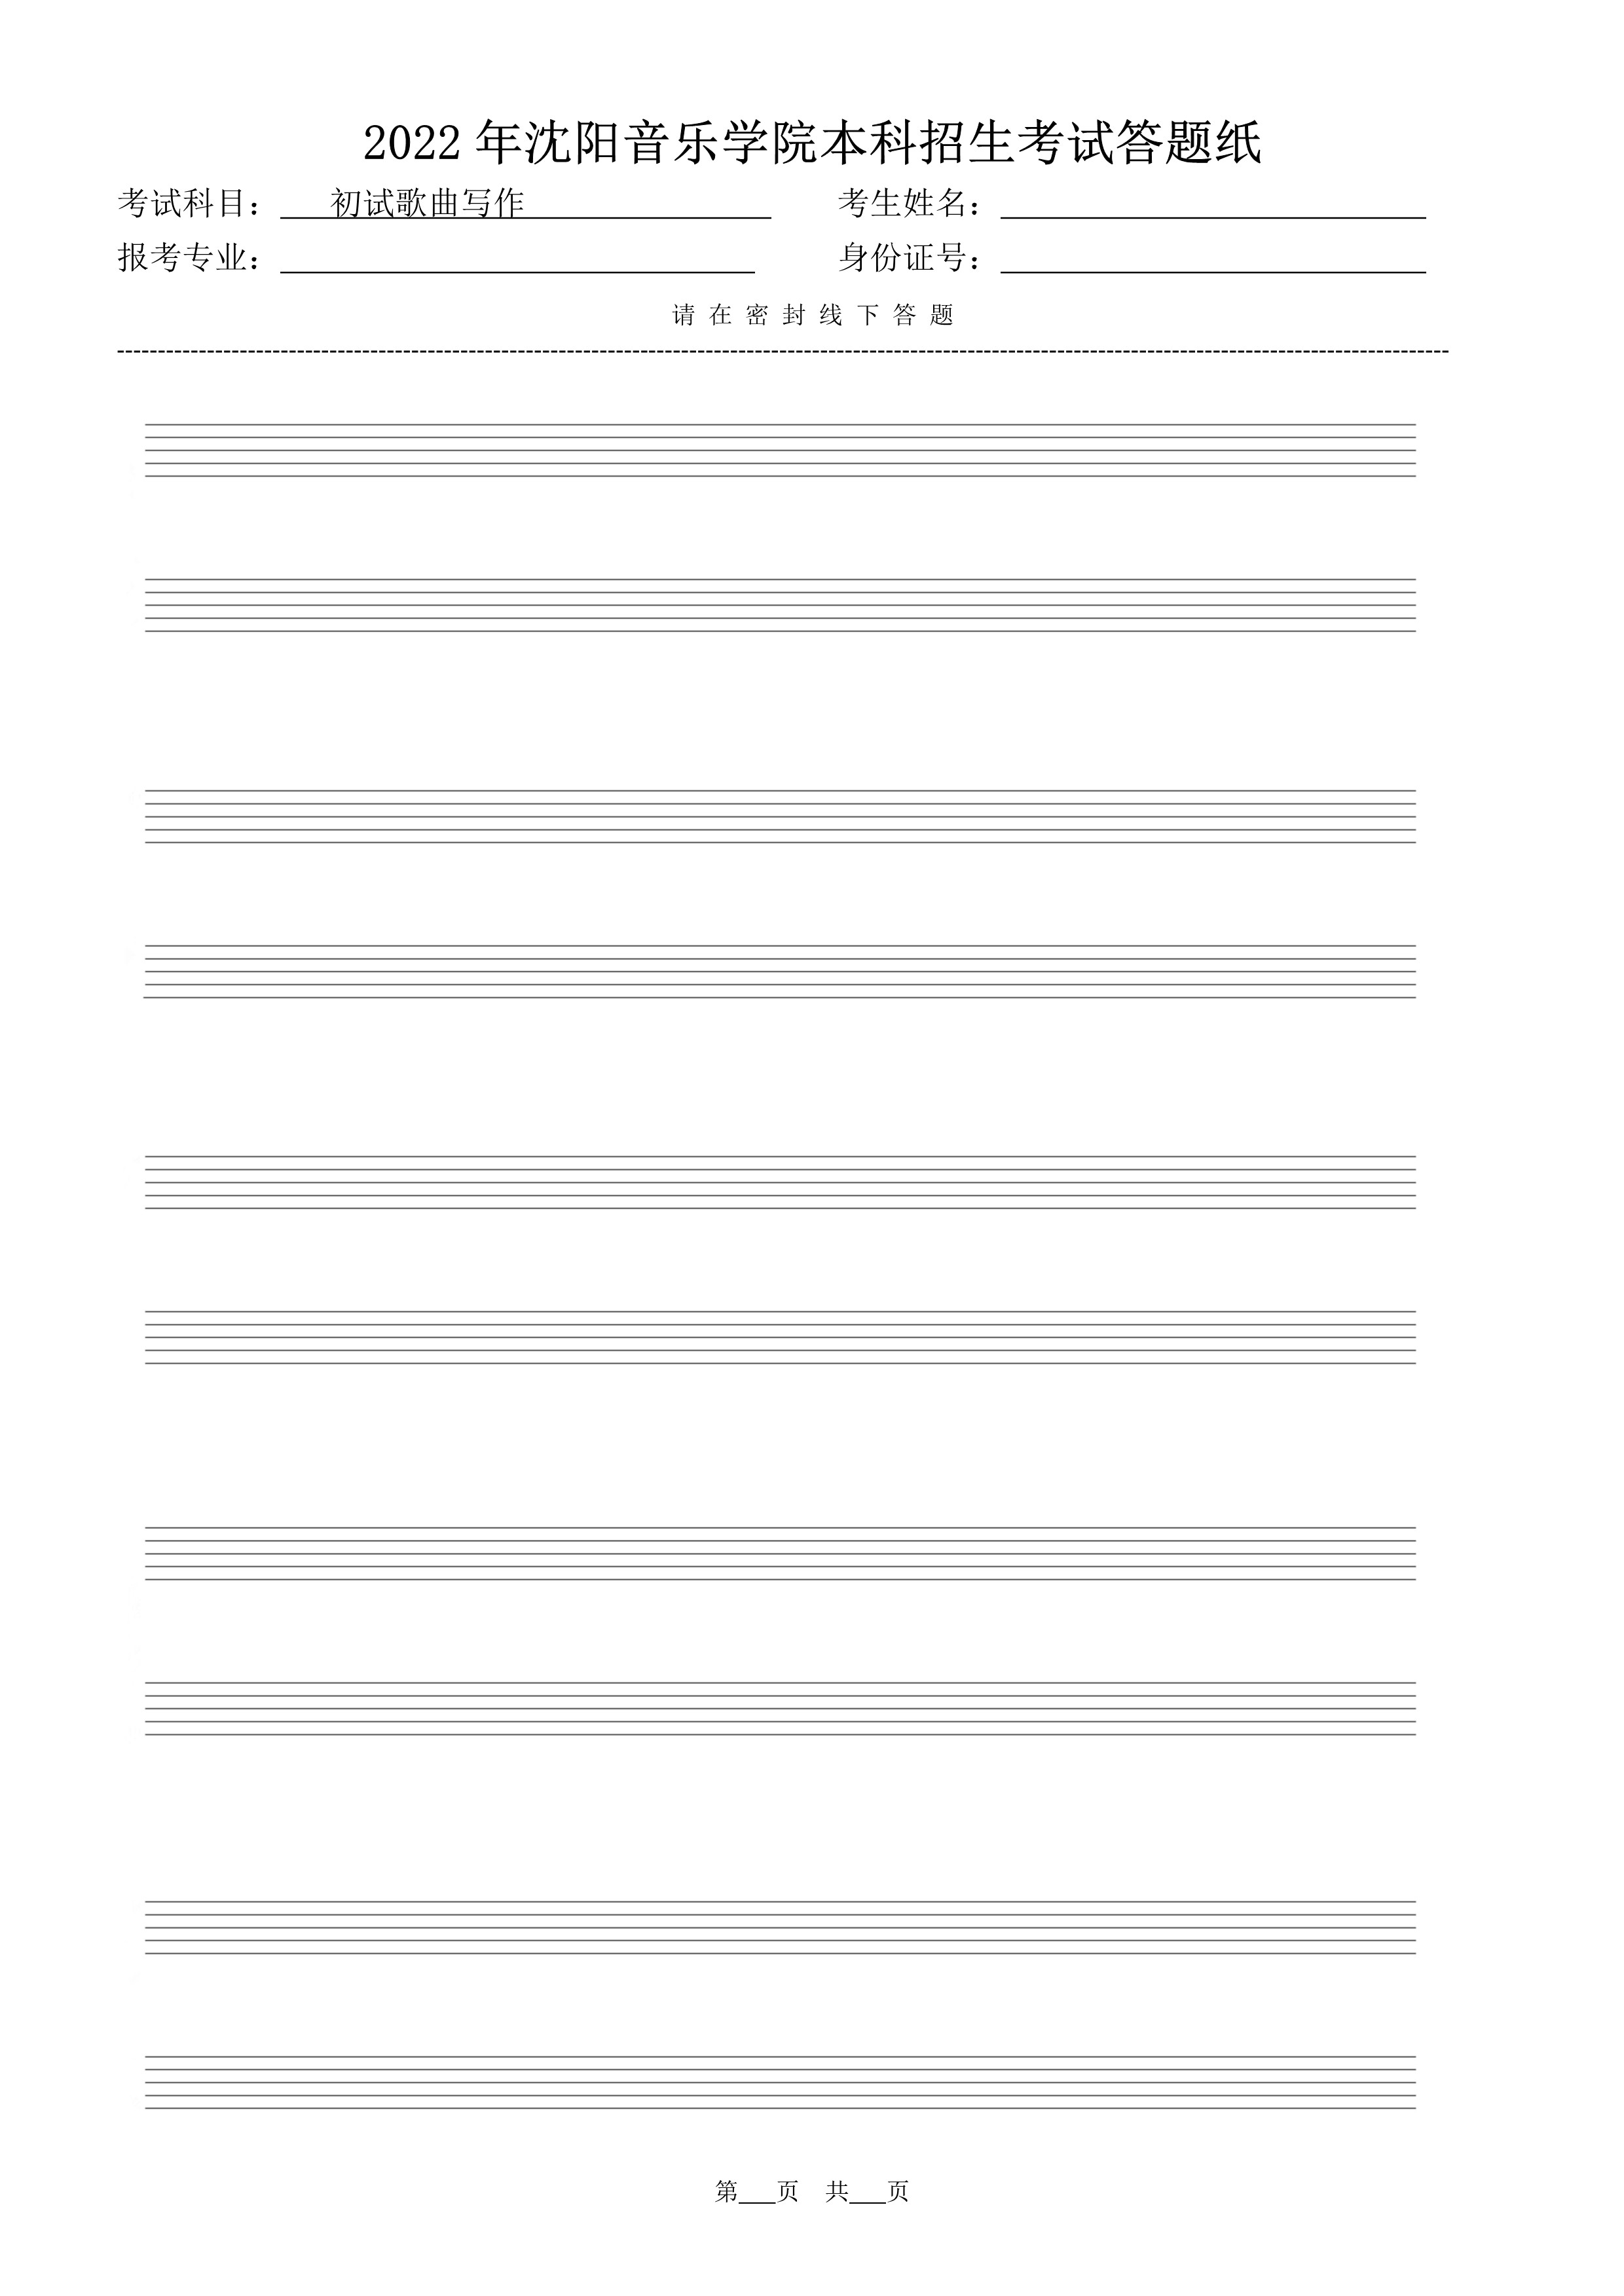 初试歌曲写作答题纸（共5页）_5.jpg